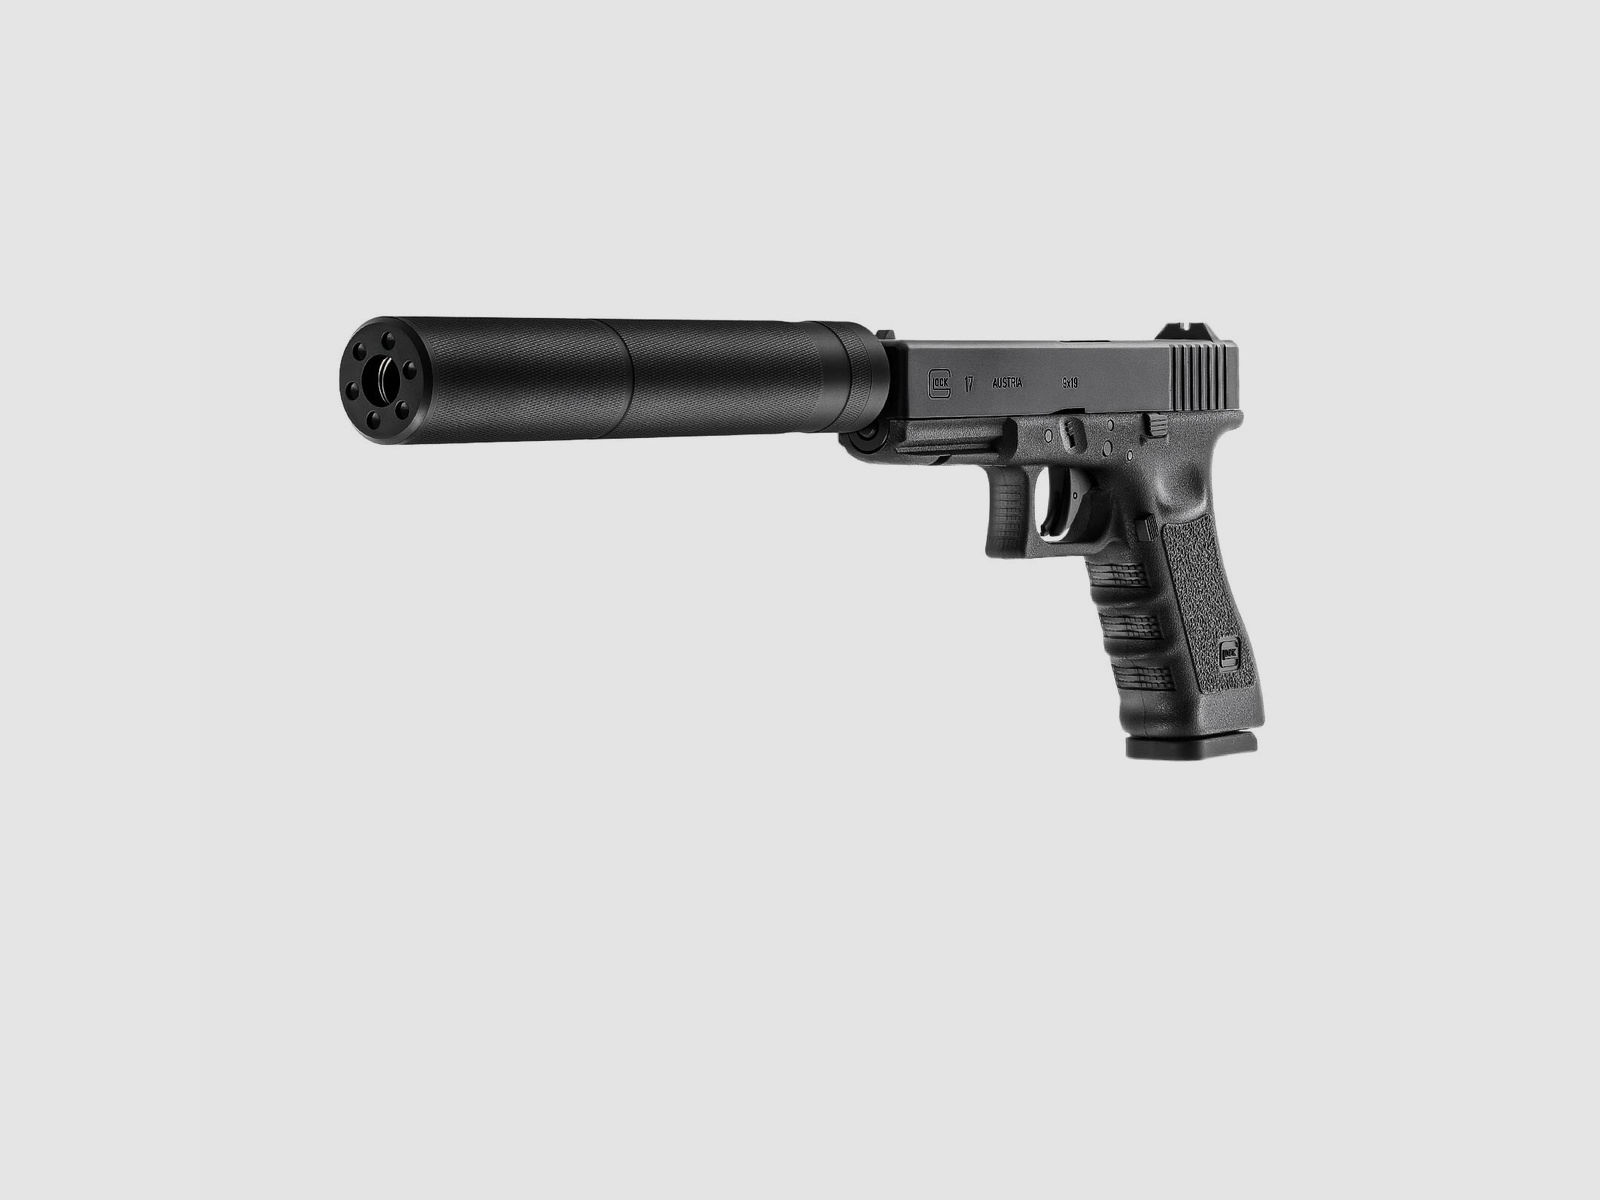 Glock 17  mit Laufgewinde Co2-Pistole Kaliber 4,5 mm Stahl BB / Diabolo Blowback (P18) + Schalldämpfer